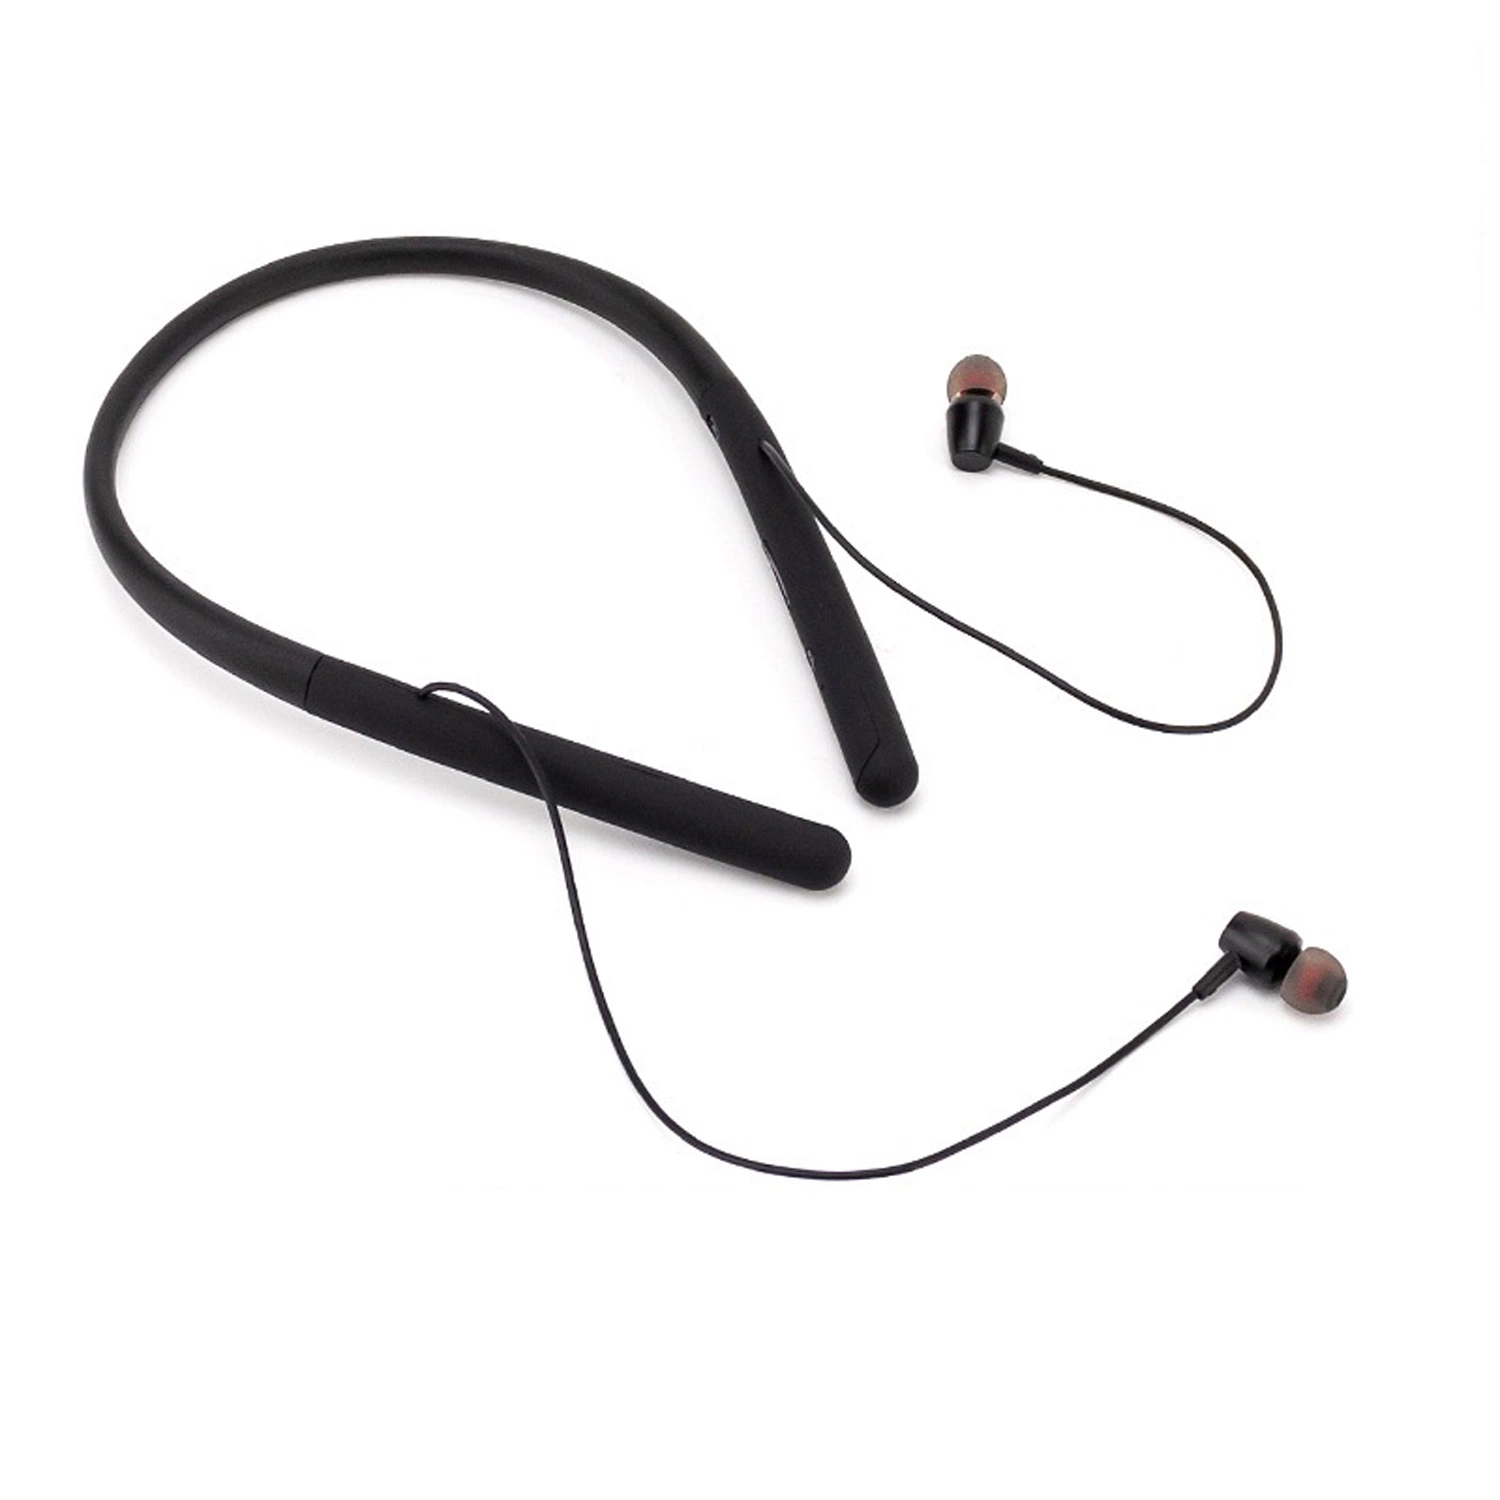 تم ضبط سماعات الأذن اللاسلكية المزودة بحزام للرقبة بواسطة Bluetooth® بواسطة نظام الصوت من Meridian